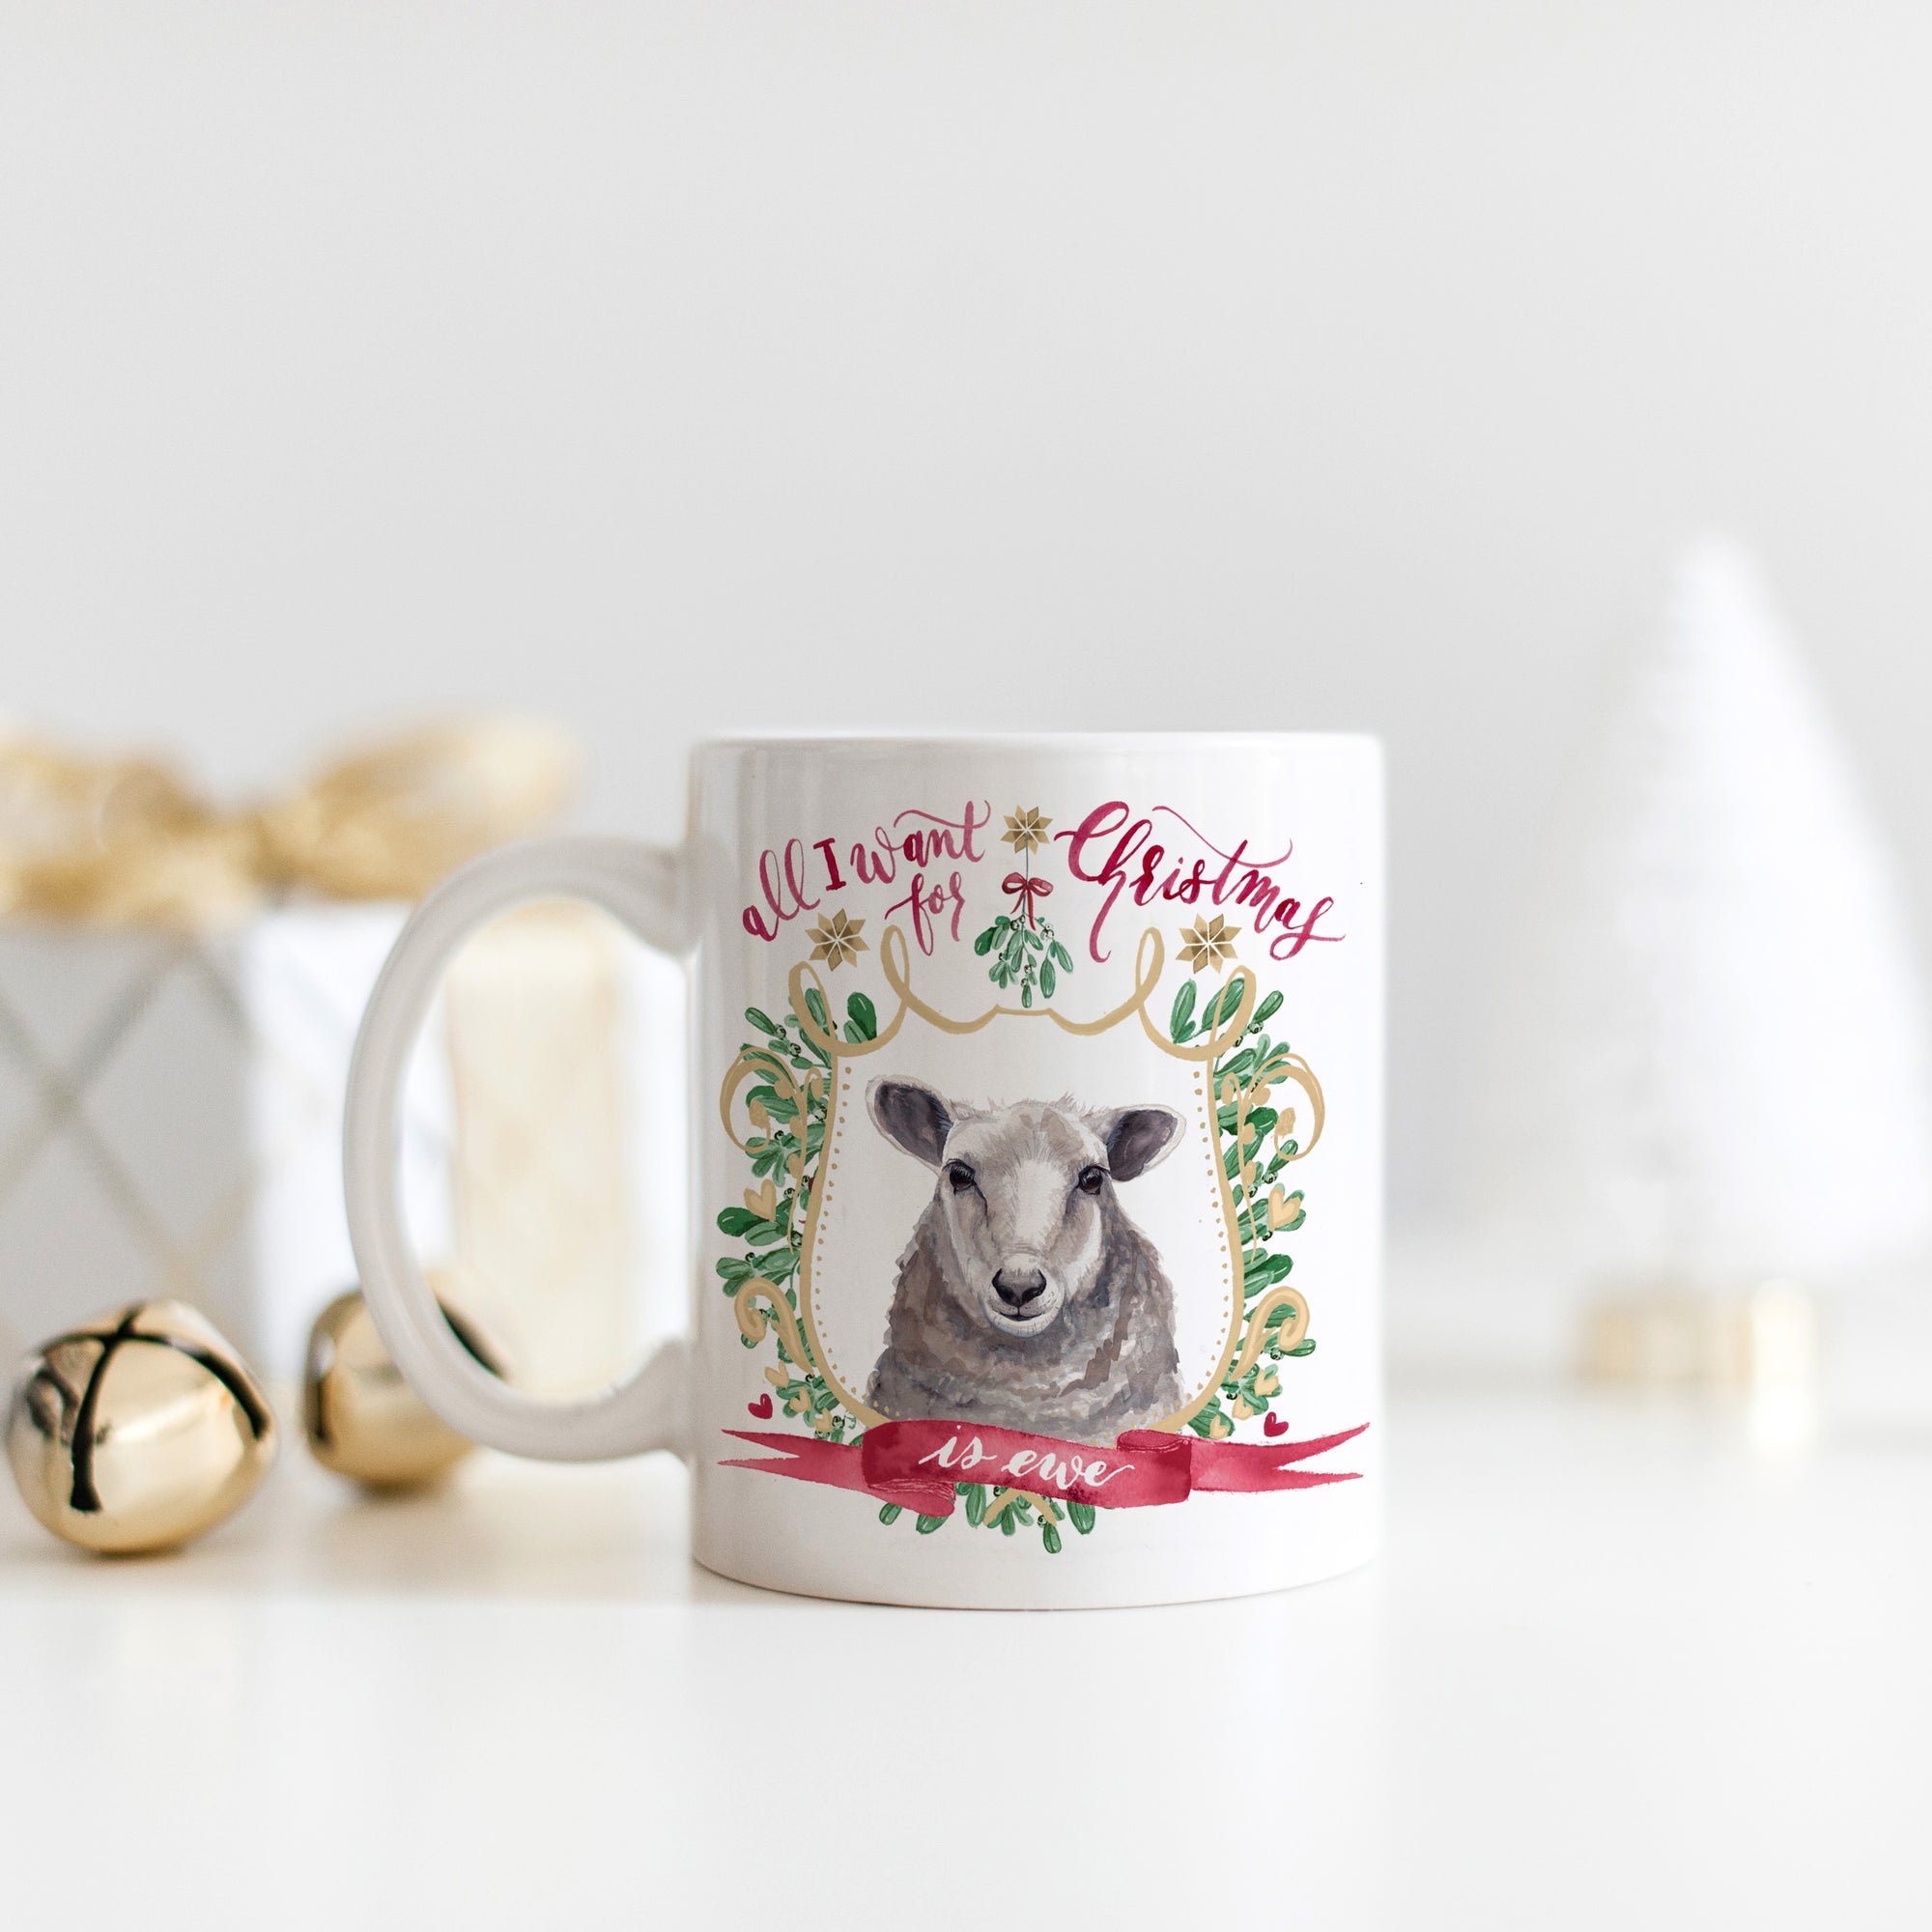 All I Want for Christmas is Ewe Mug